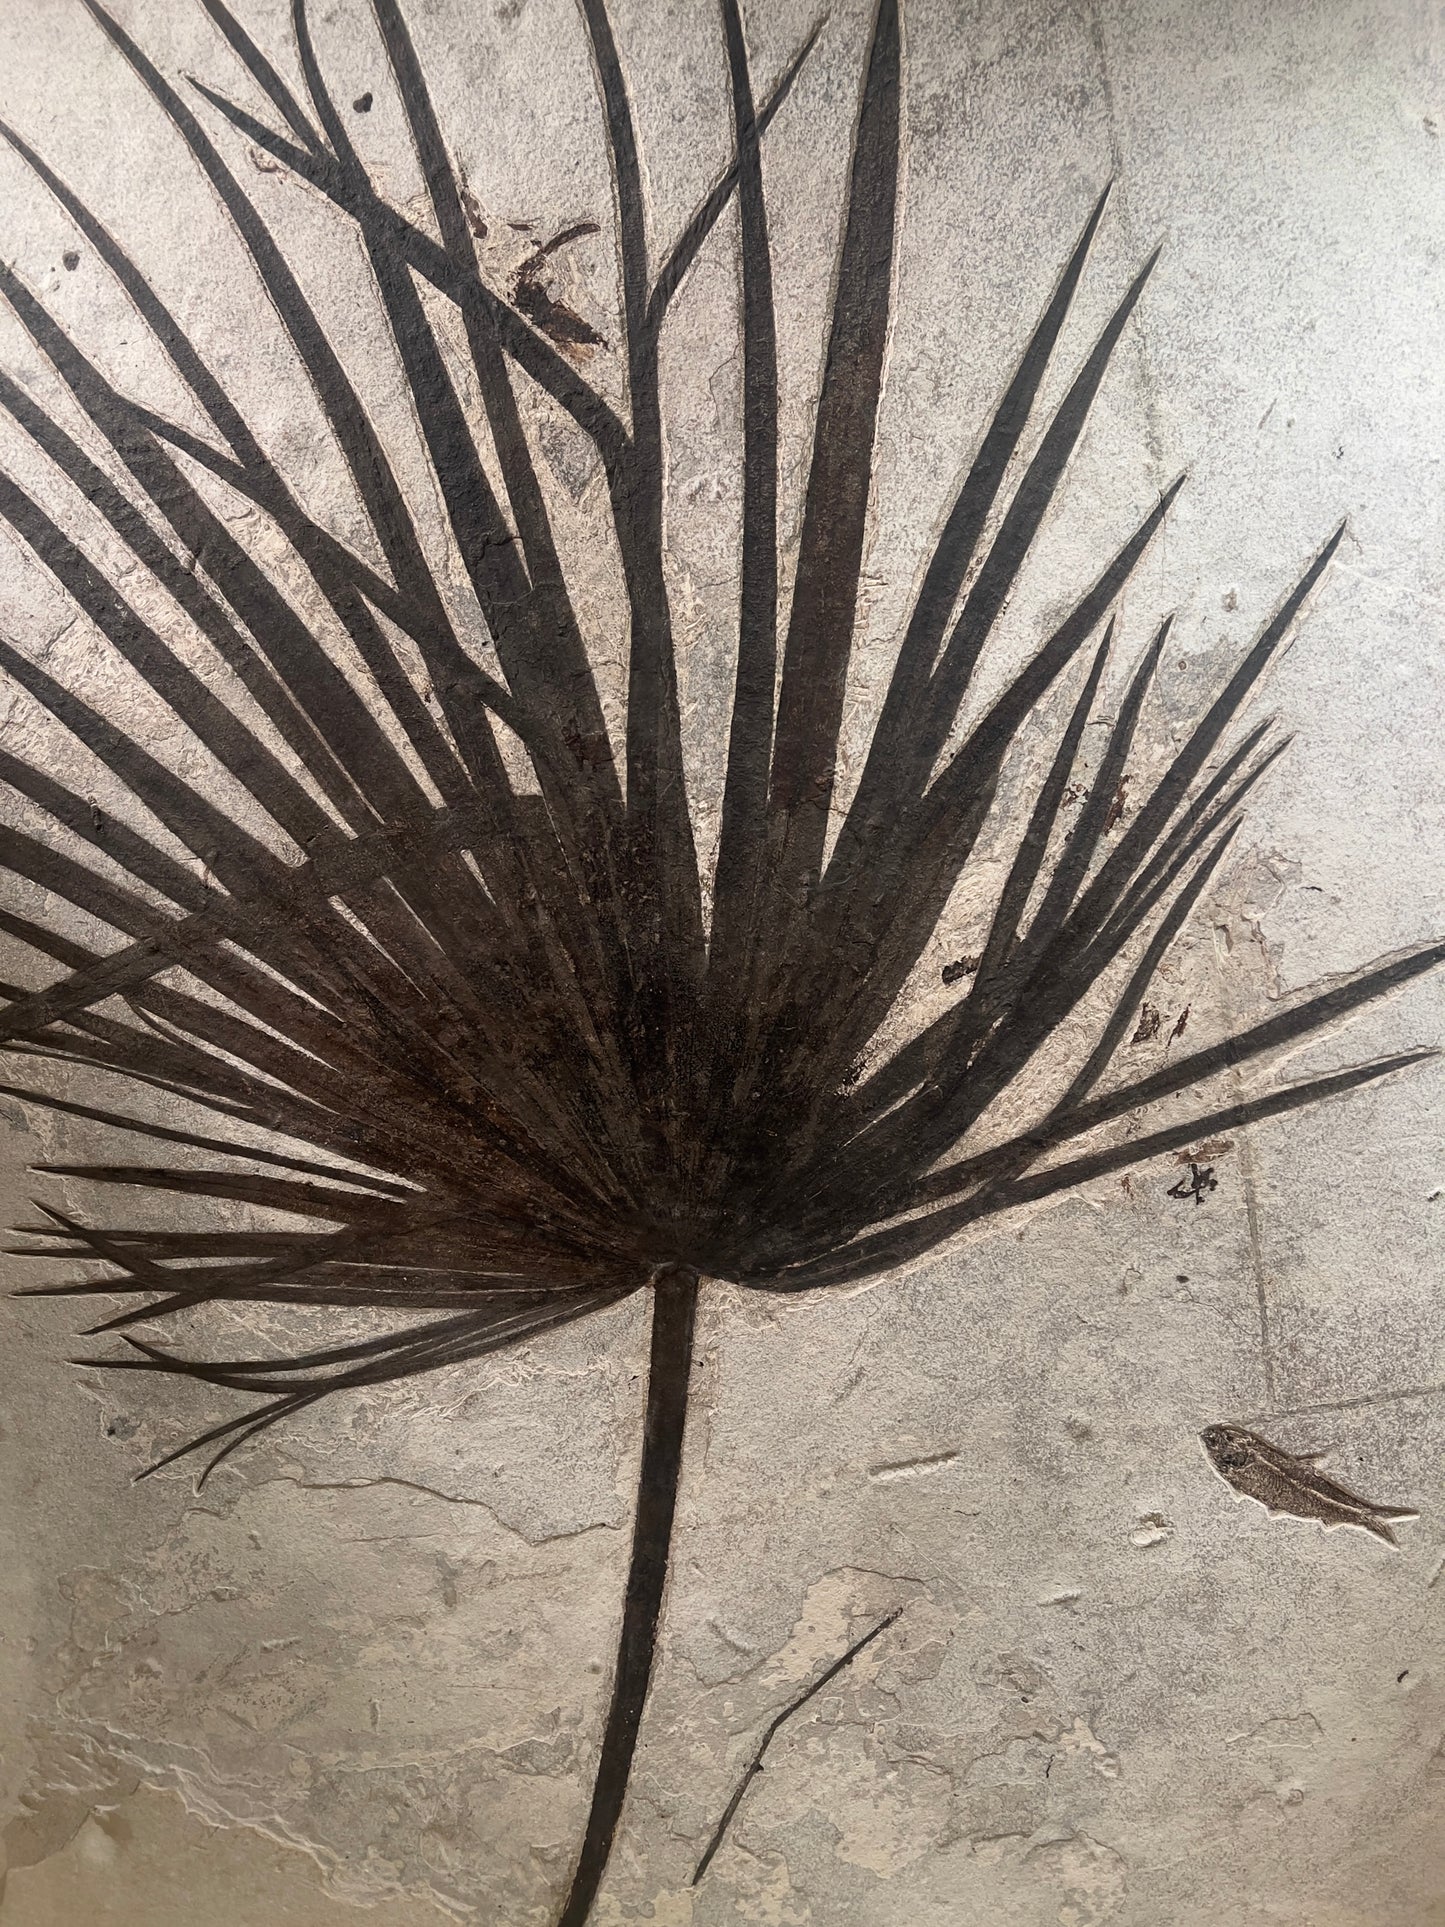 Versteinertes Palmblatt umgeben von Fischfossilien | Green River, Wyoming, USA